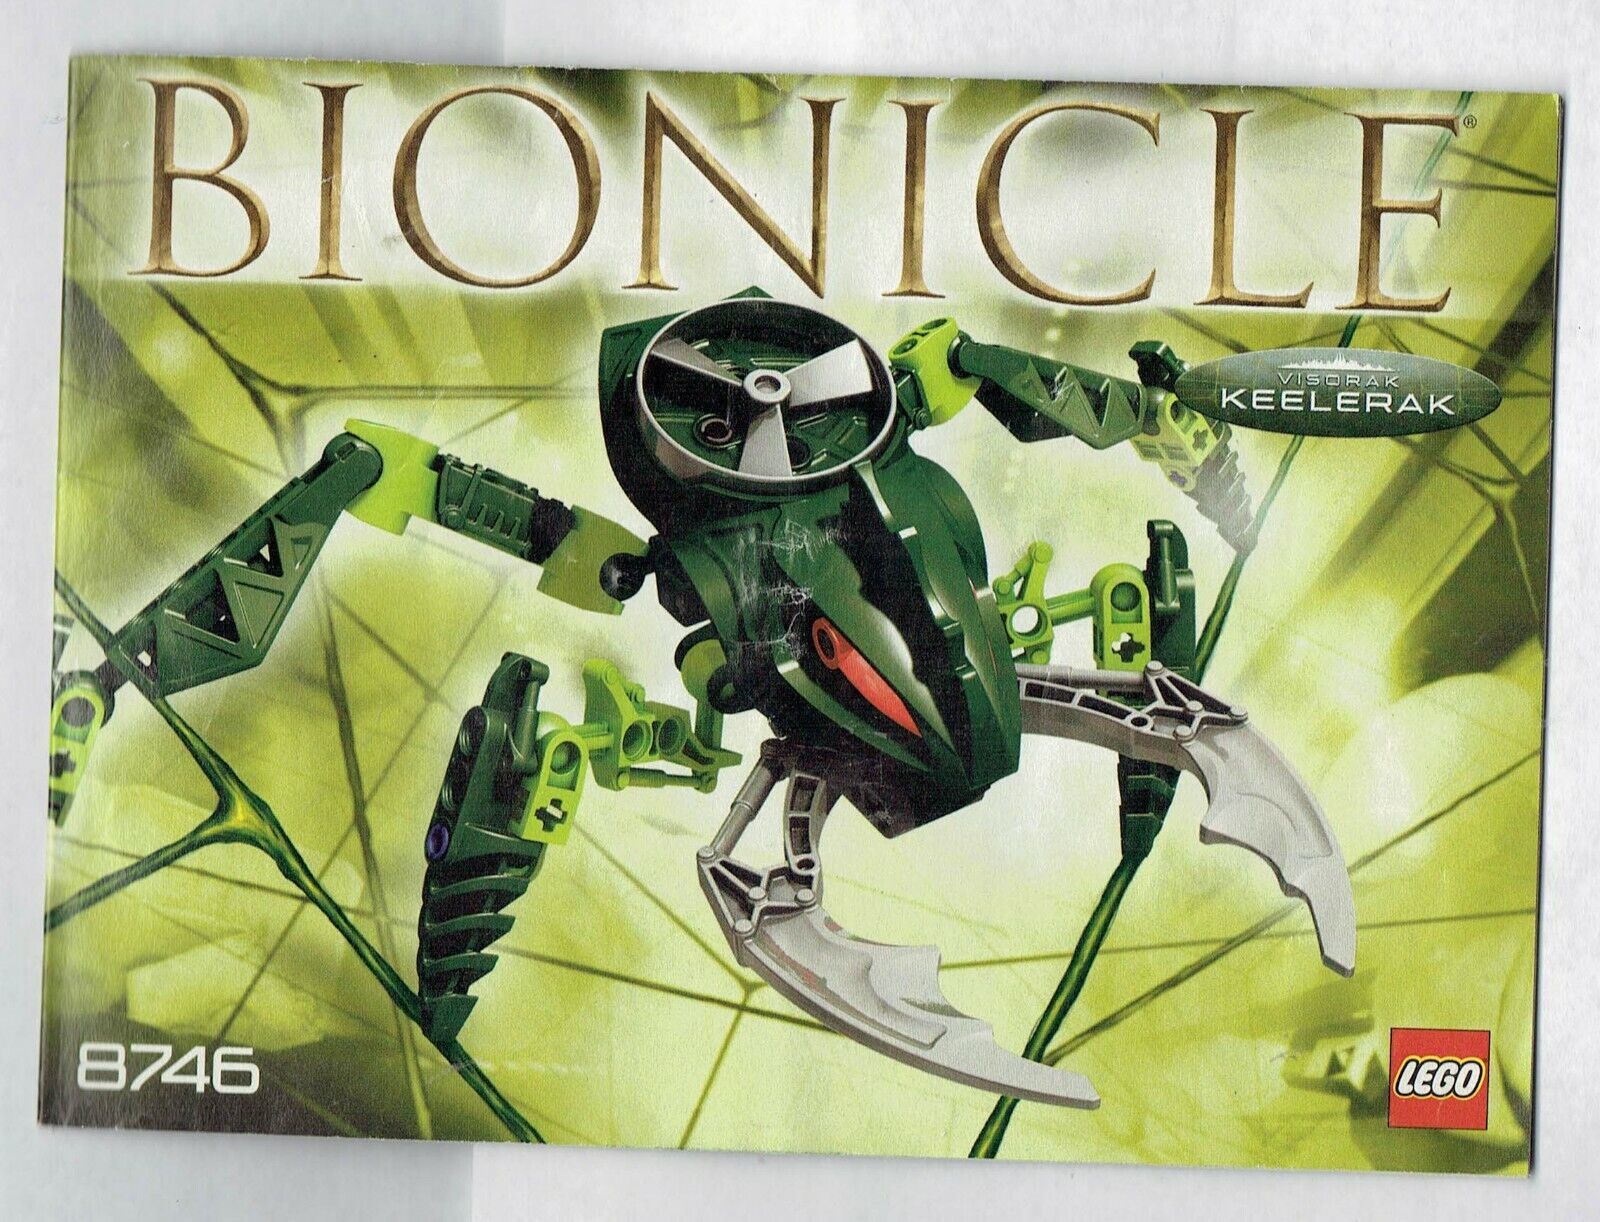 Primary image for LEGO Bionicle Visorak Keelerak 8746 instruction Booklet Manual ONLY